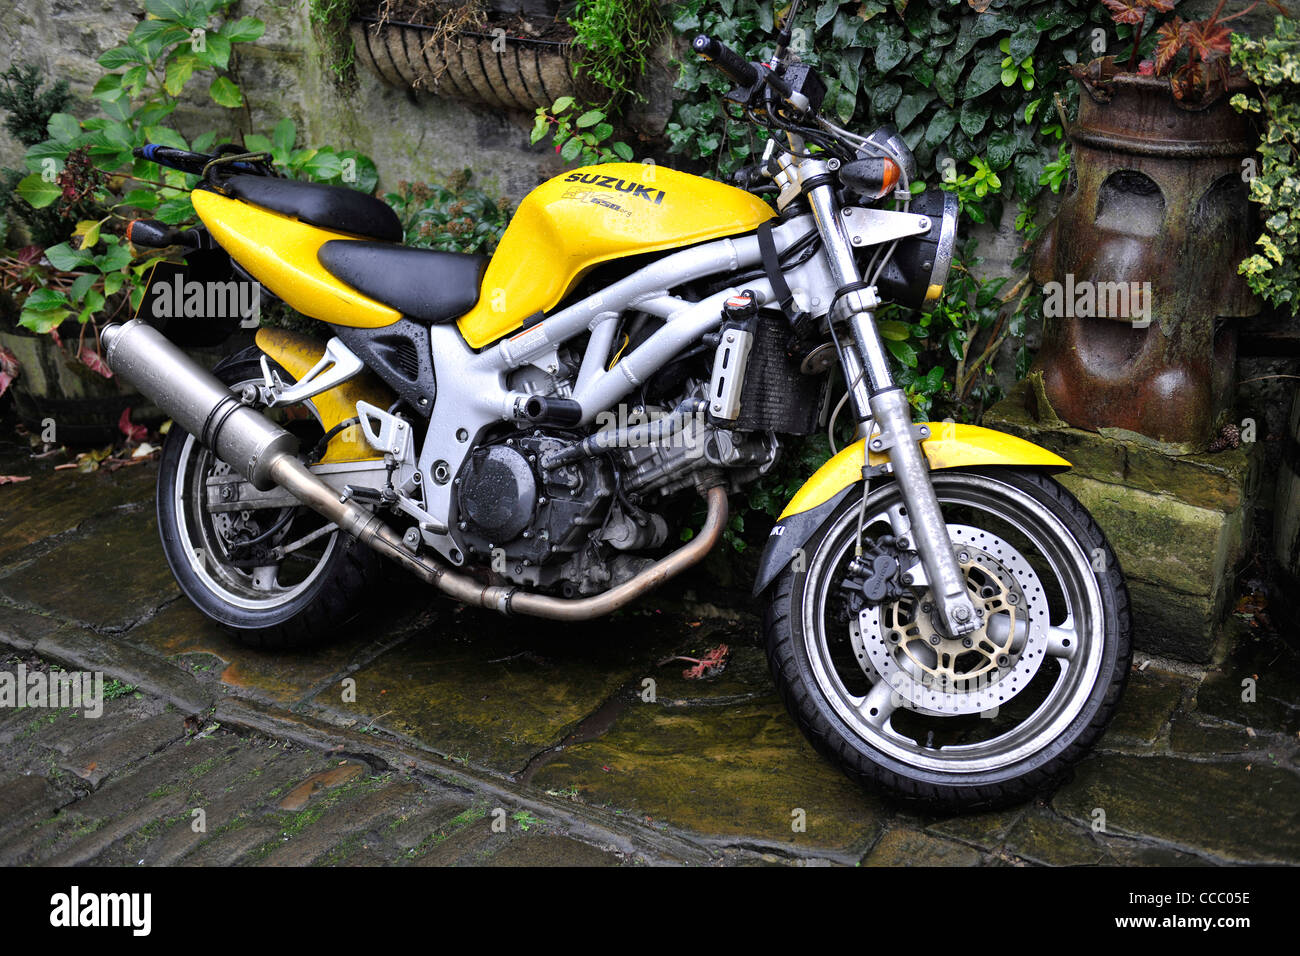 Yellow Suzuki SV 650 Motorcycle Stock Photo